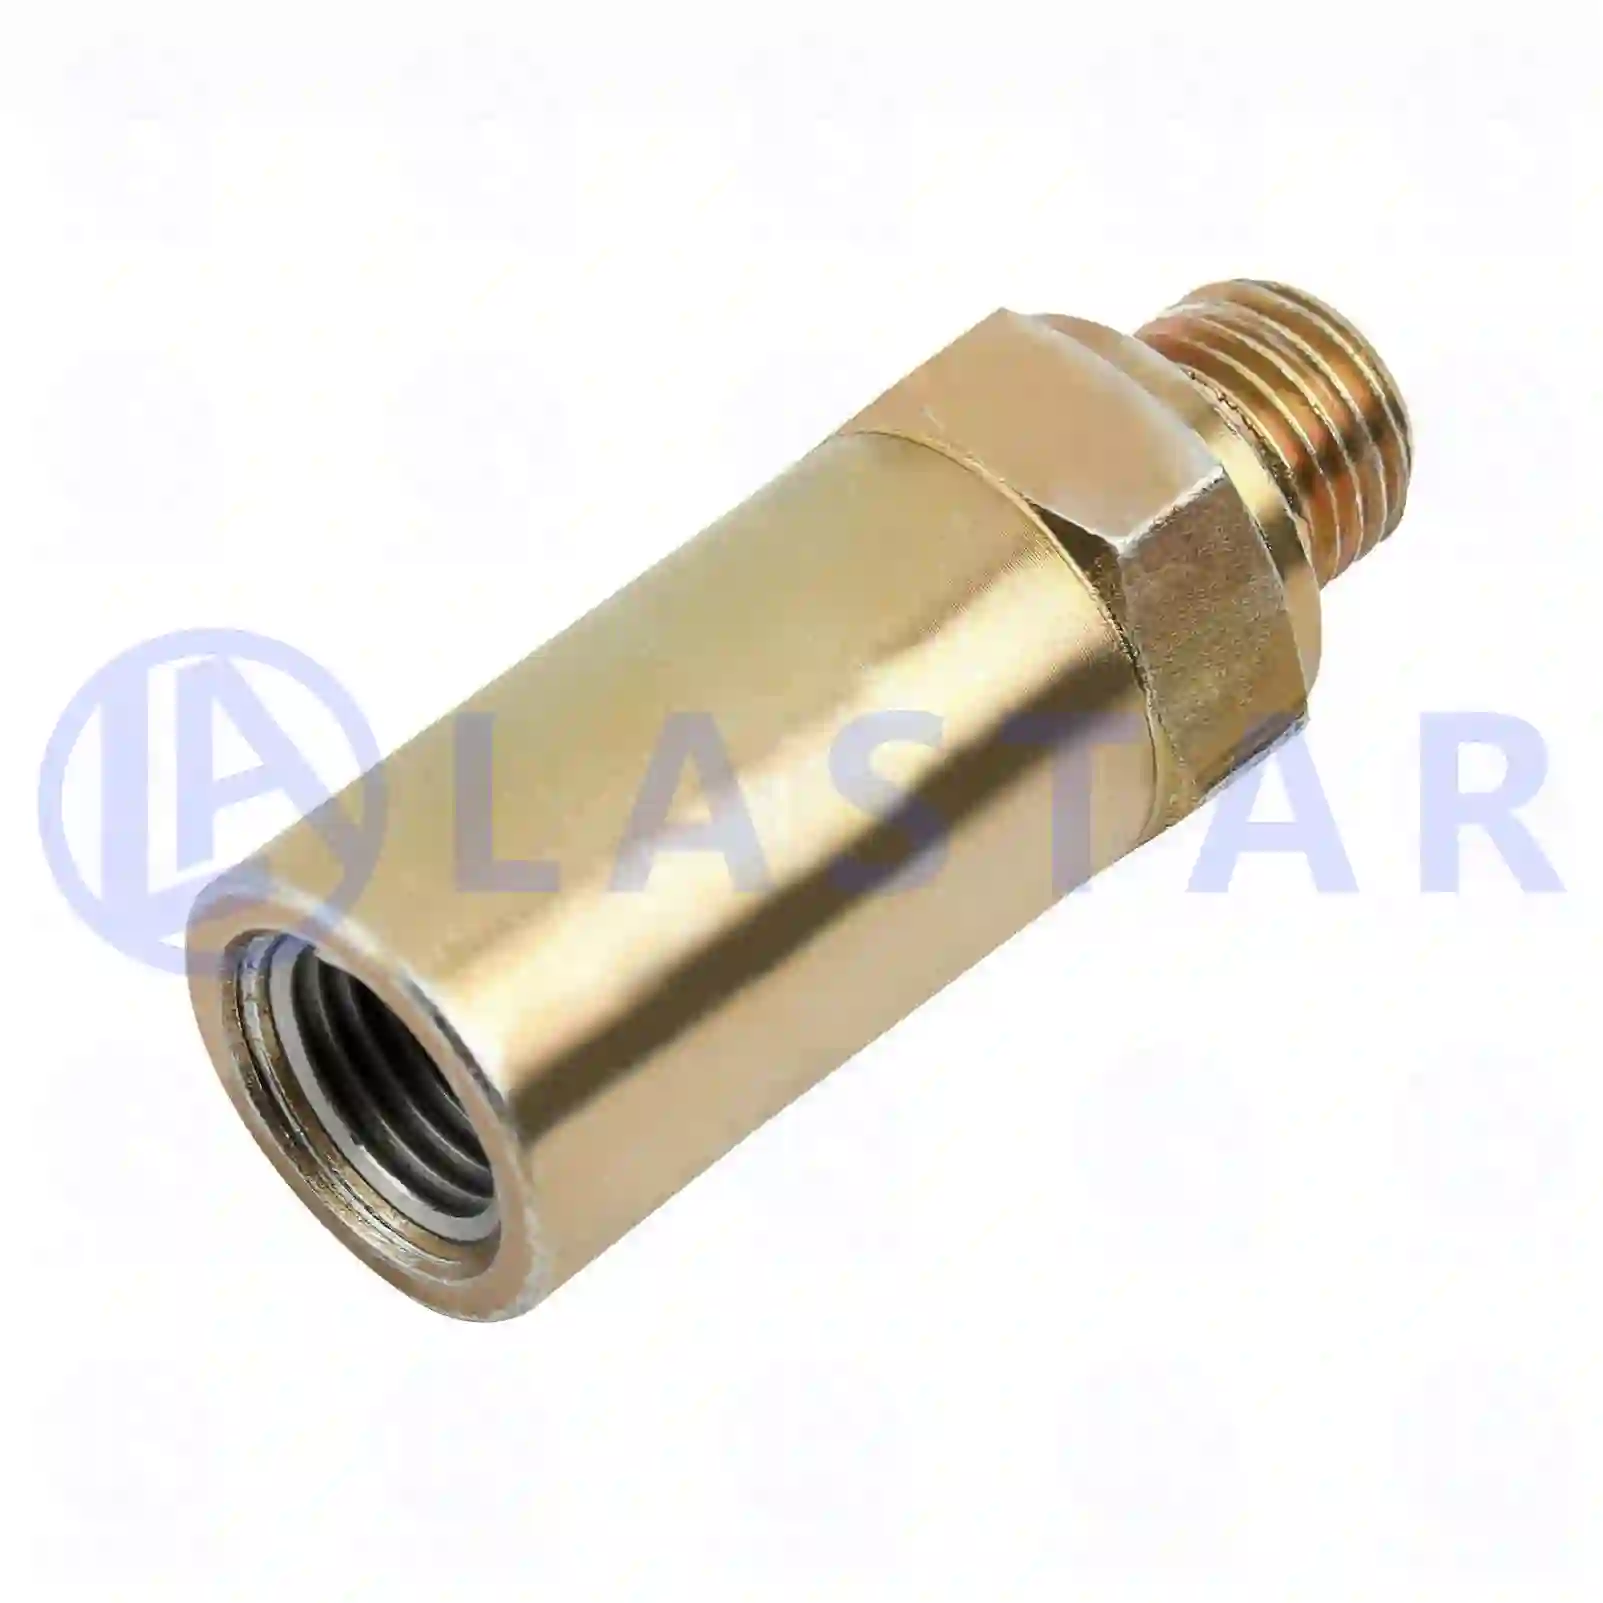 Injection Pump Overflow valve, la no: 77723950 ,  oem no:20765317, 3097433 Lastar Spare Part | Truck Spare Parts, Auotomotive Spare Parts